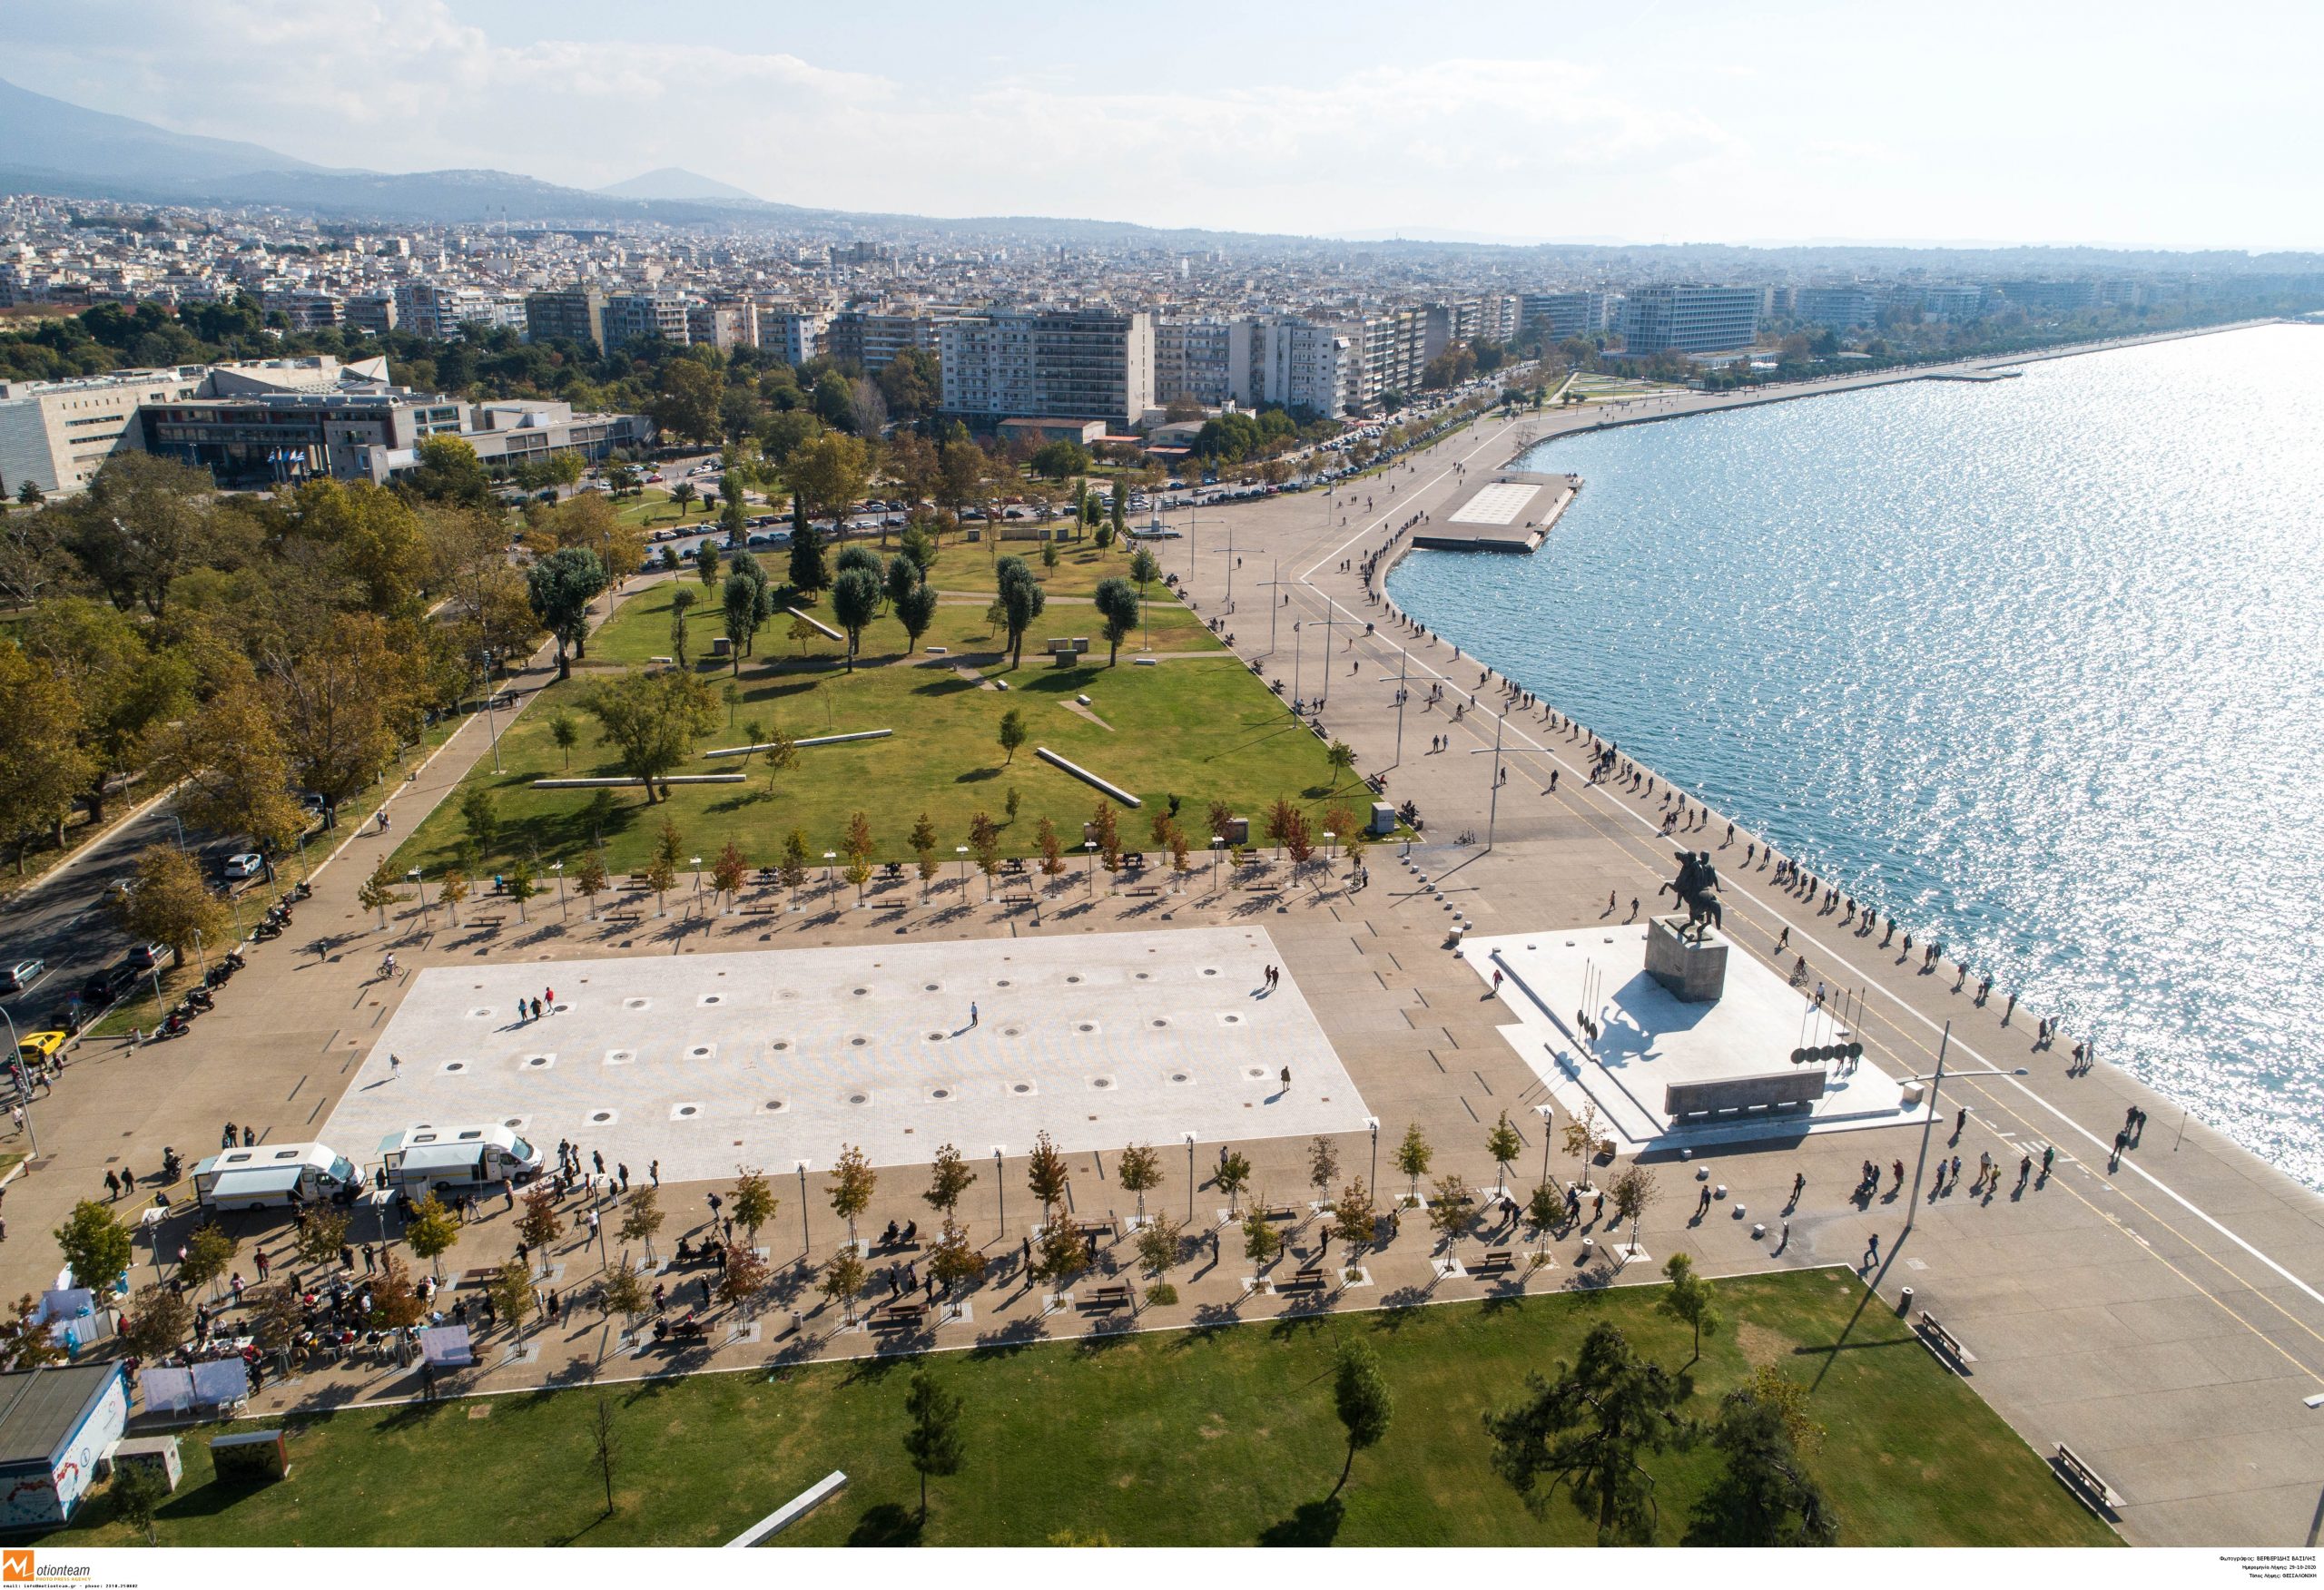 Lockdown σε Θεσσαλονίκη και Σέρρες για 14 ημέρες -Με SMS οι μετακινήσεις